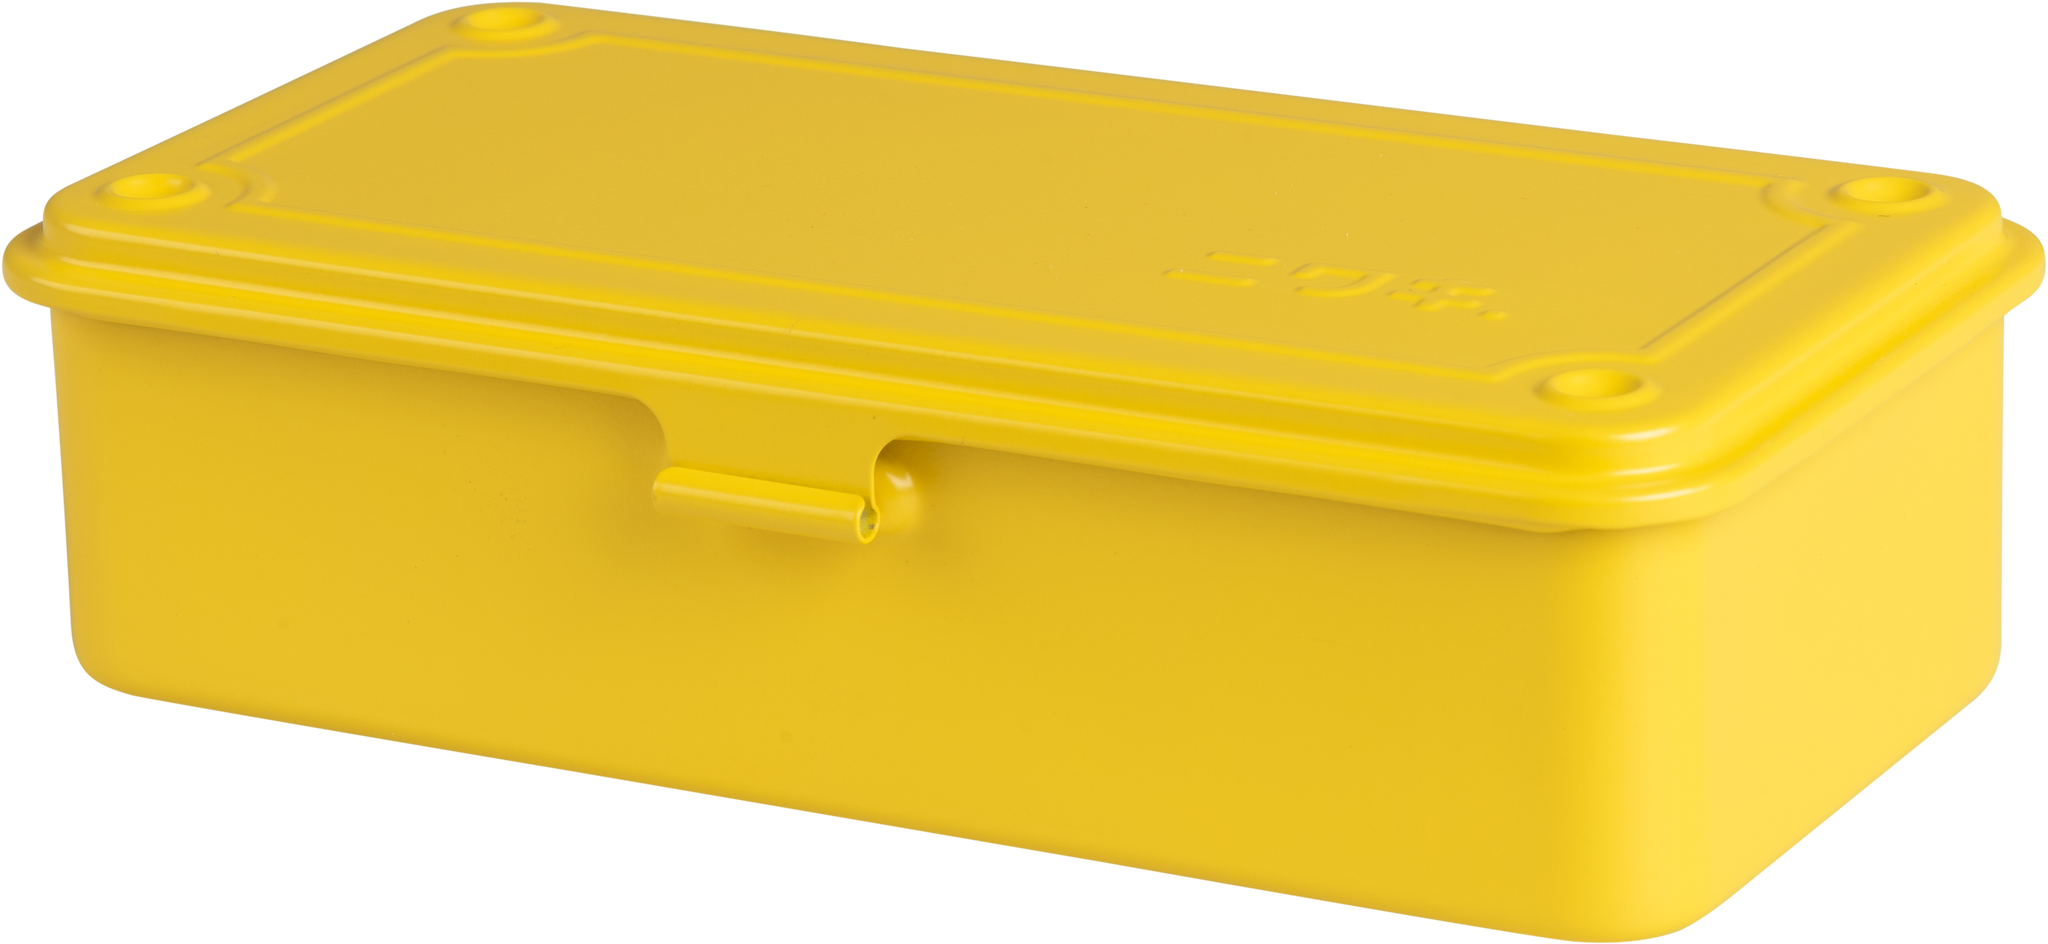 niwaki-t-type-tool-box-yellow